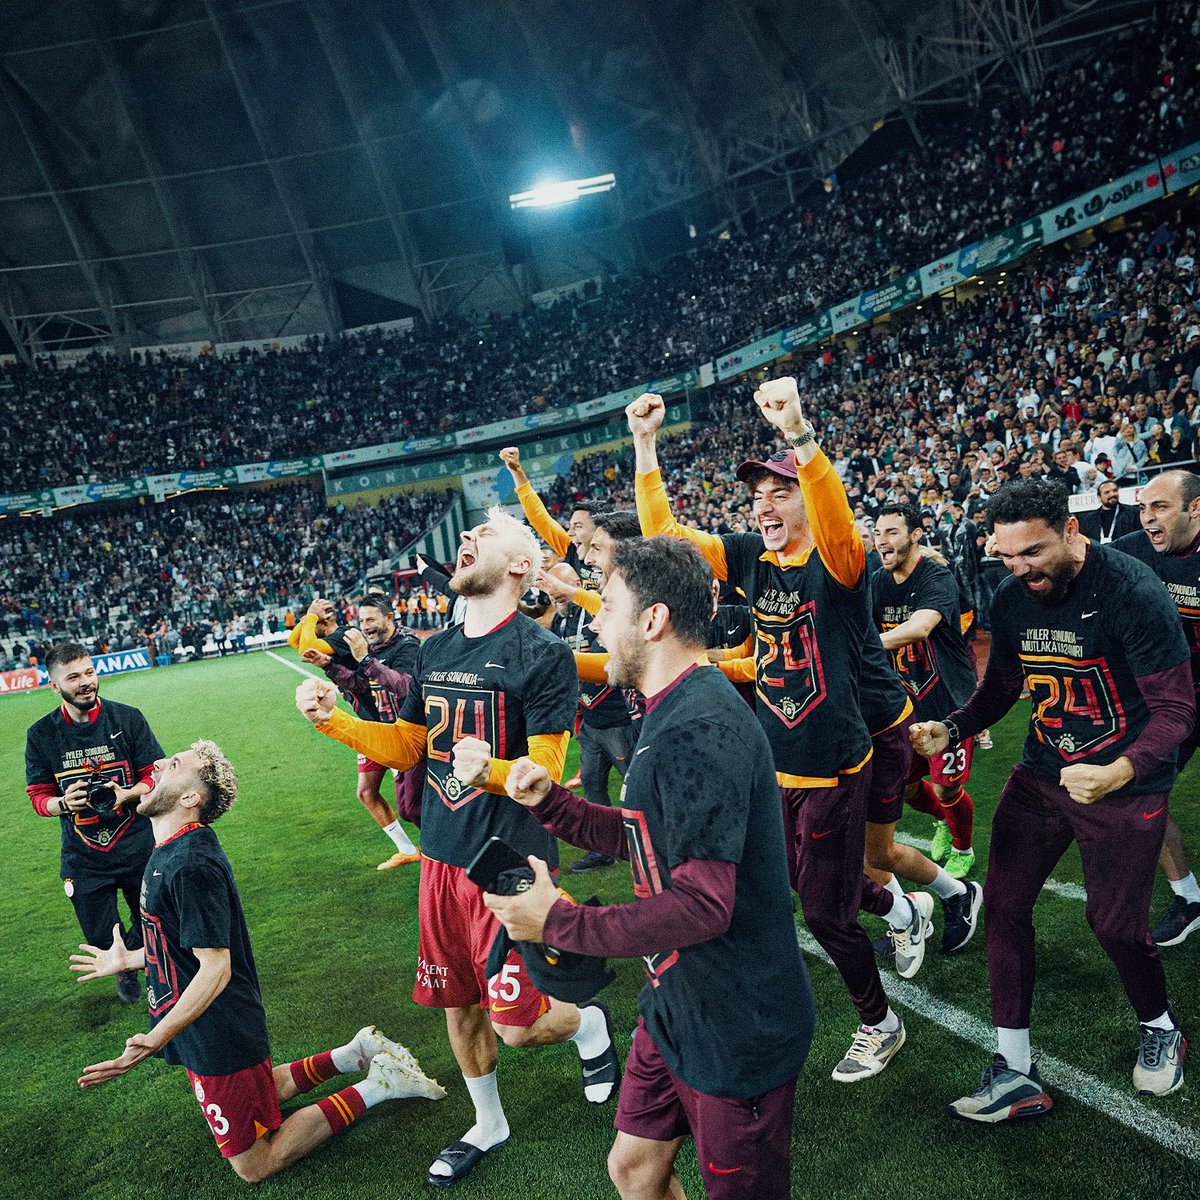 Galatasaray bir his takımıdır… Tüm hayatını bizlerle birlikte, milyonlarca taraftarımıza bu mutlu günü yaşatabilmek için adayan, bu şampiyonlukta emeği olan herkese teşekkürler. Sonuna kadar hak ettik, her anıyla gurur duyuyorum. 💛❤️@GalatasaraySK